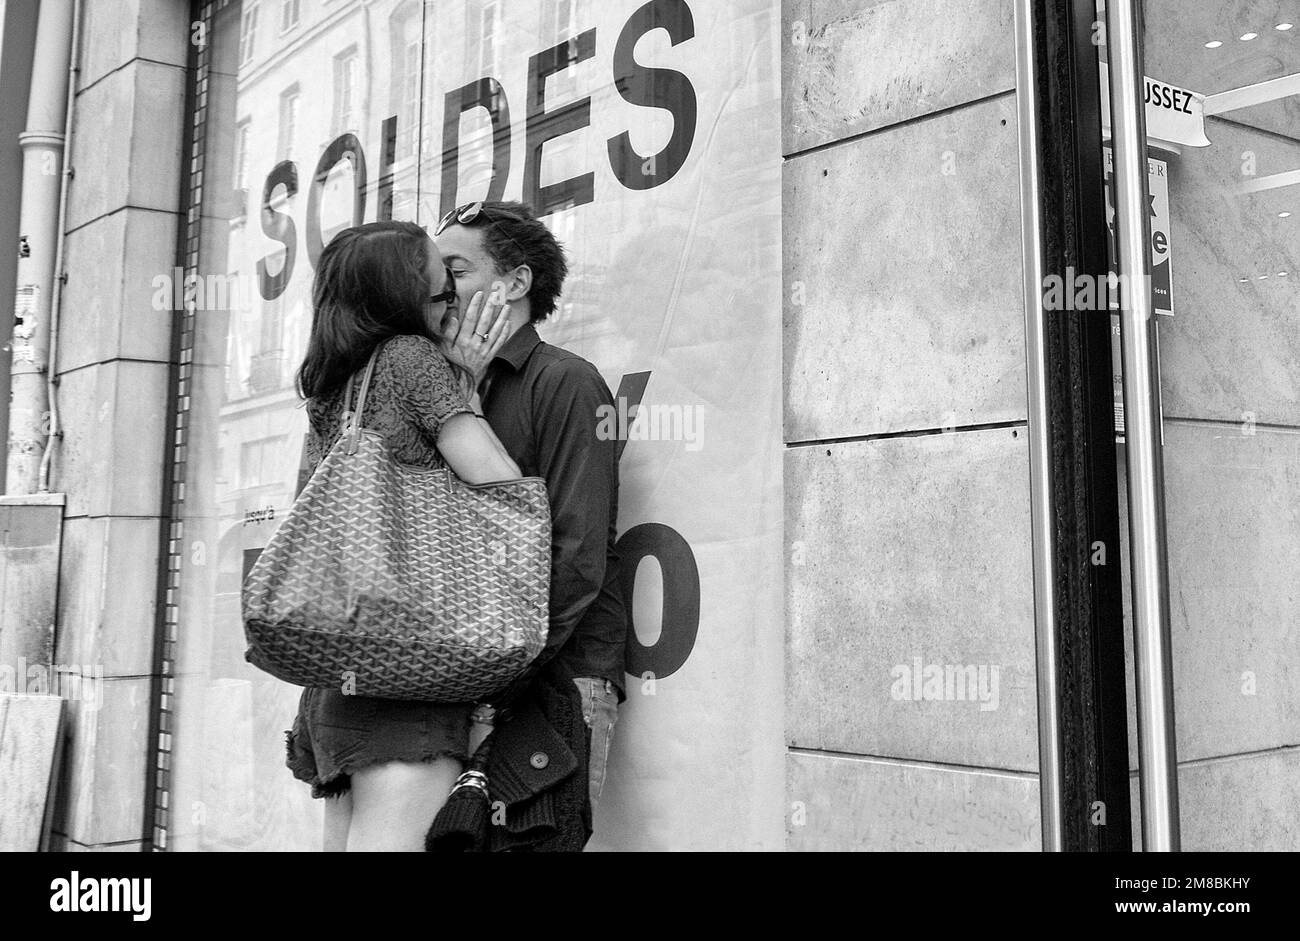 Zwei verliebte Menschen küssen sich auf einer Straße in Paris. Frankreich. Vvbvanbree Fotografie. Stockfoto